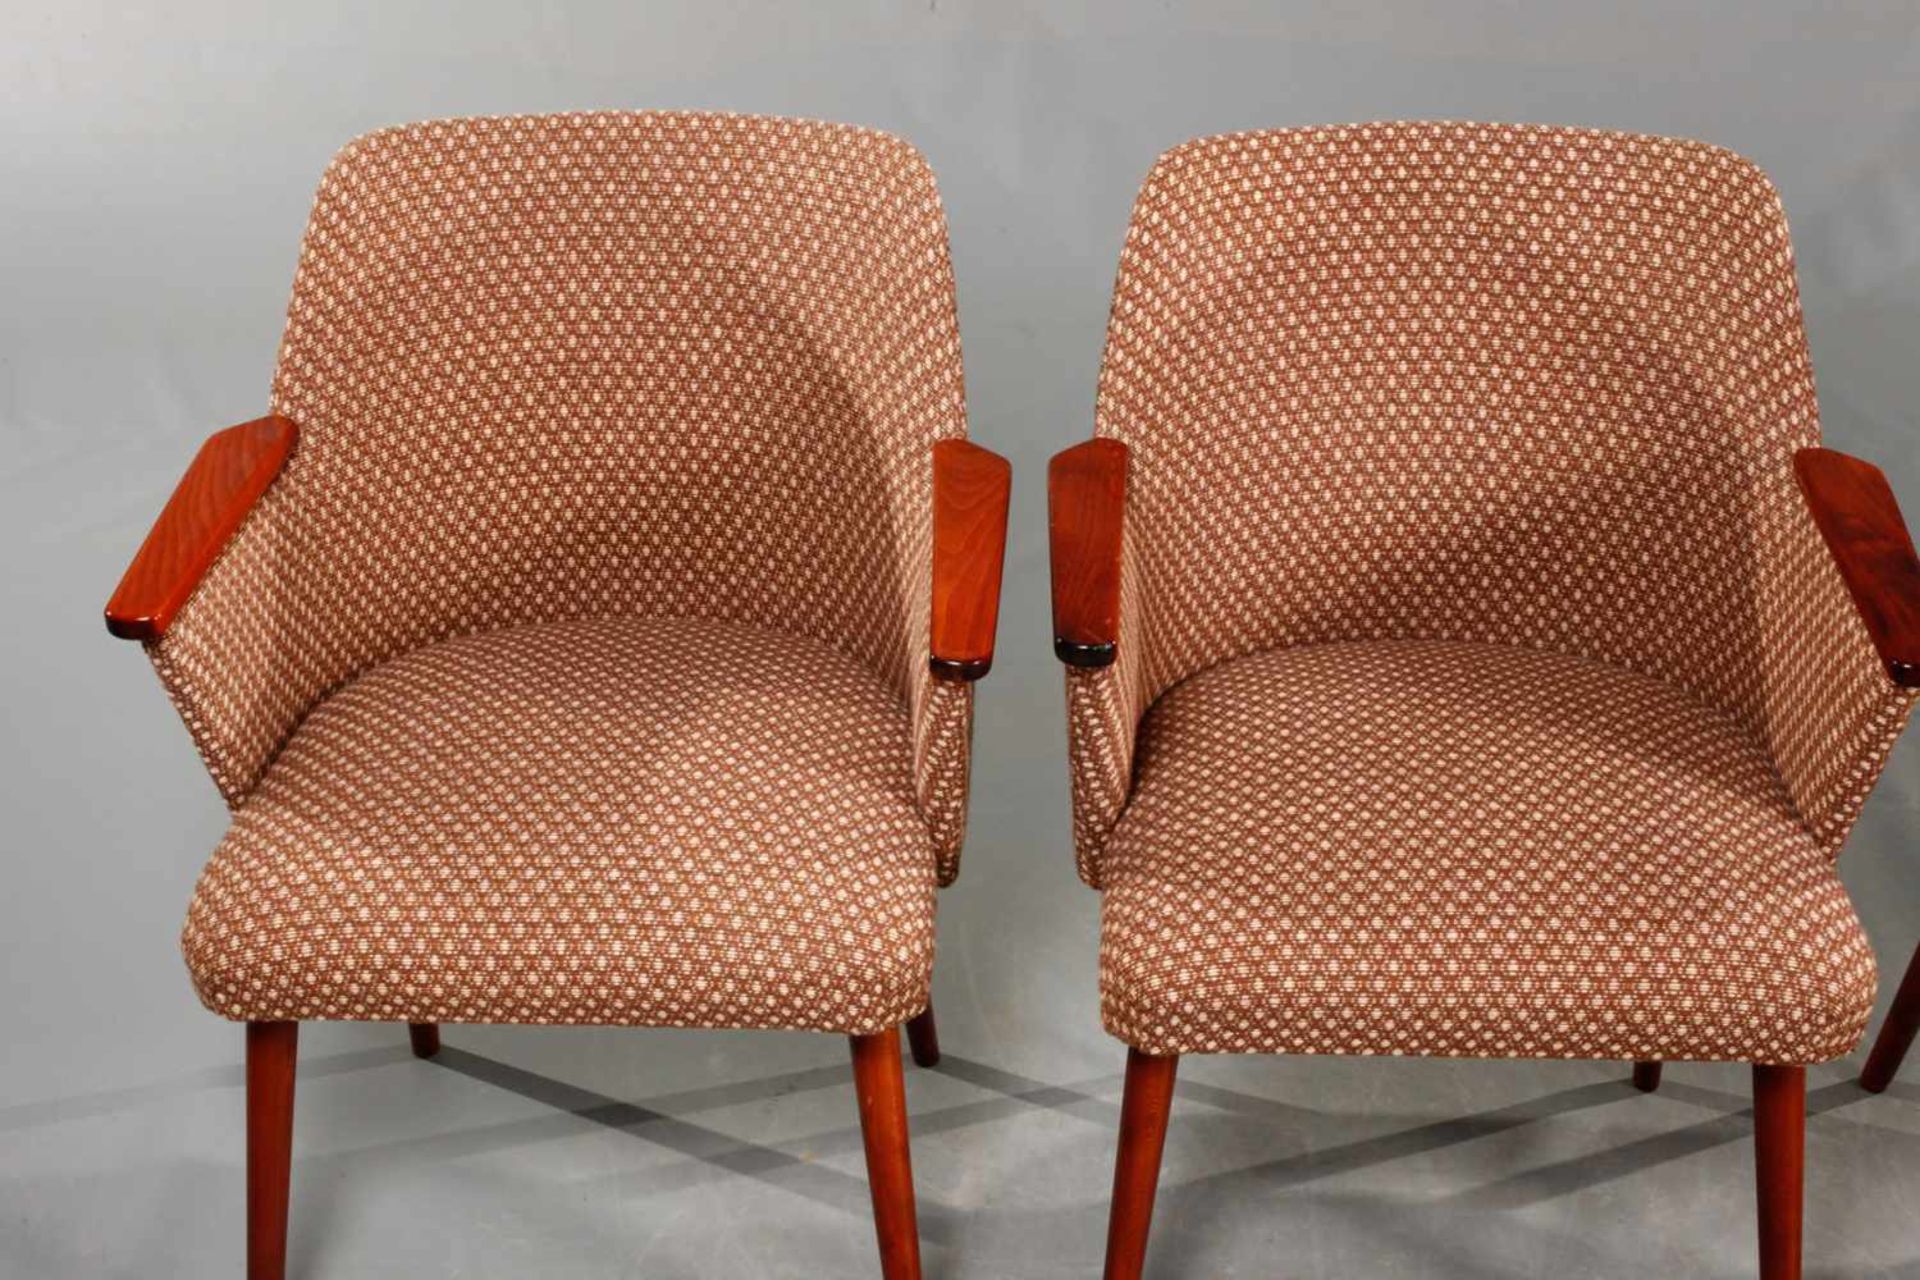 Vier Sessel DDR-Design 1950er Jahre, Lehne und Beine aus Buche, rotbraun gebeizt, originaler - Bild 2 aus 5